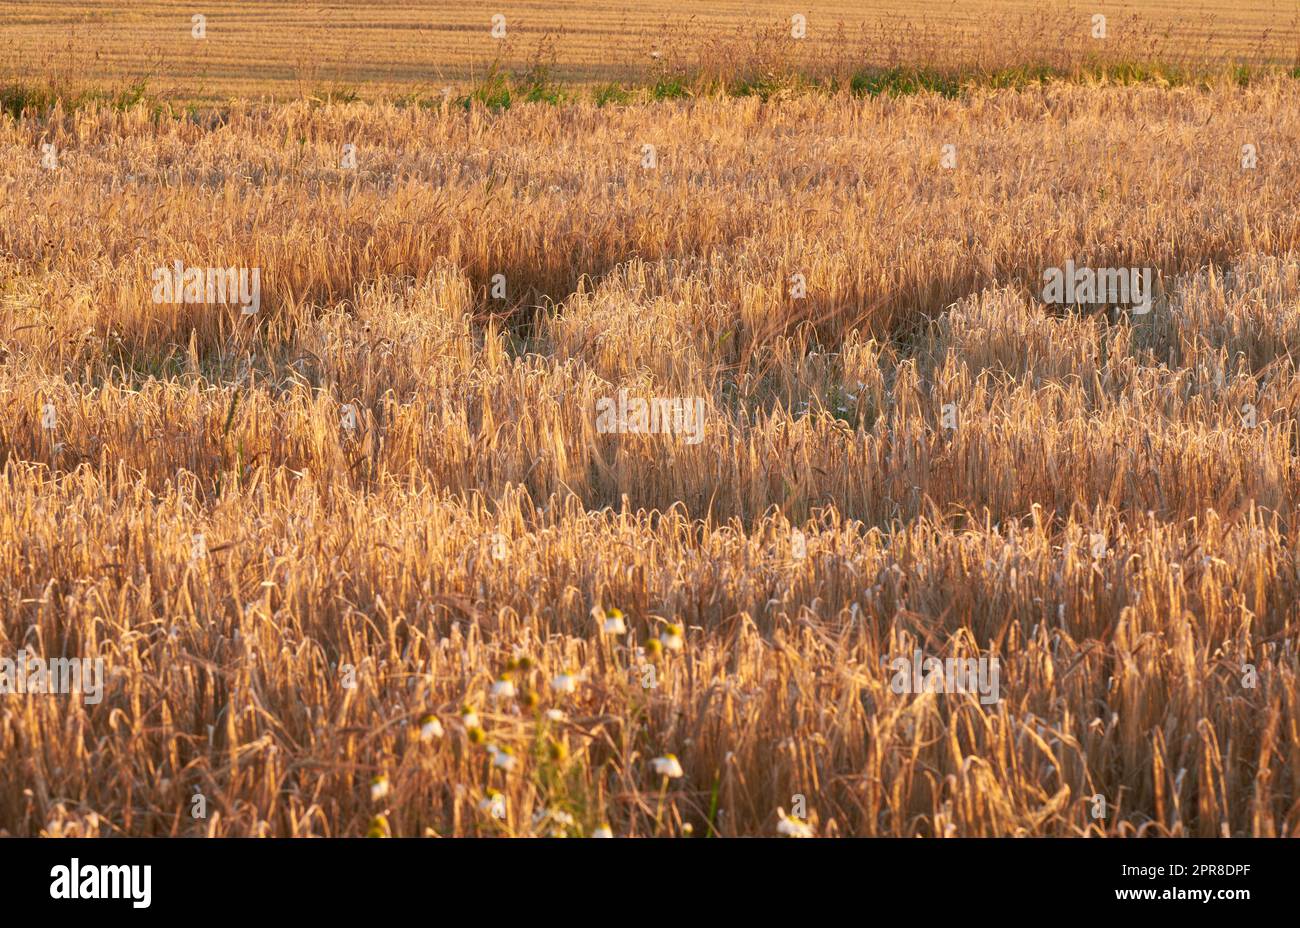 Gros plan avec copyspace de blé poussant sur une ferme au soleil en plein air. Paysage de tiges dorées de seigle mûrissant et de céréales cultivées sur un champ de maïs à fraiser en farine dans la campagne Banque D'Images